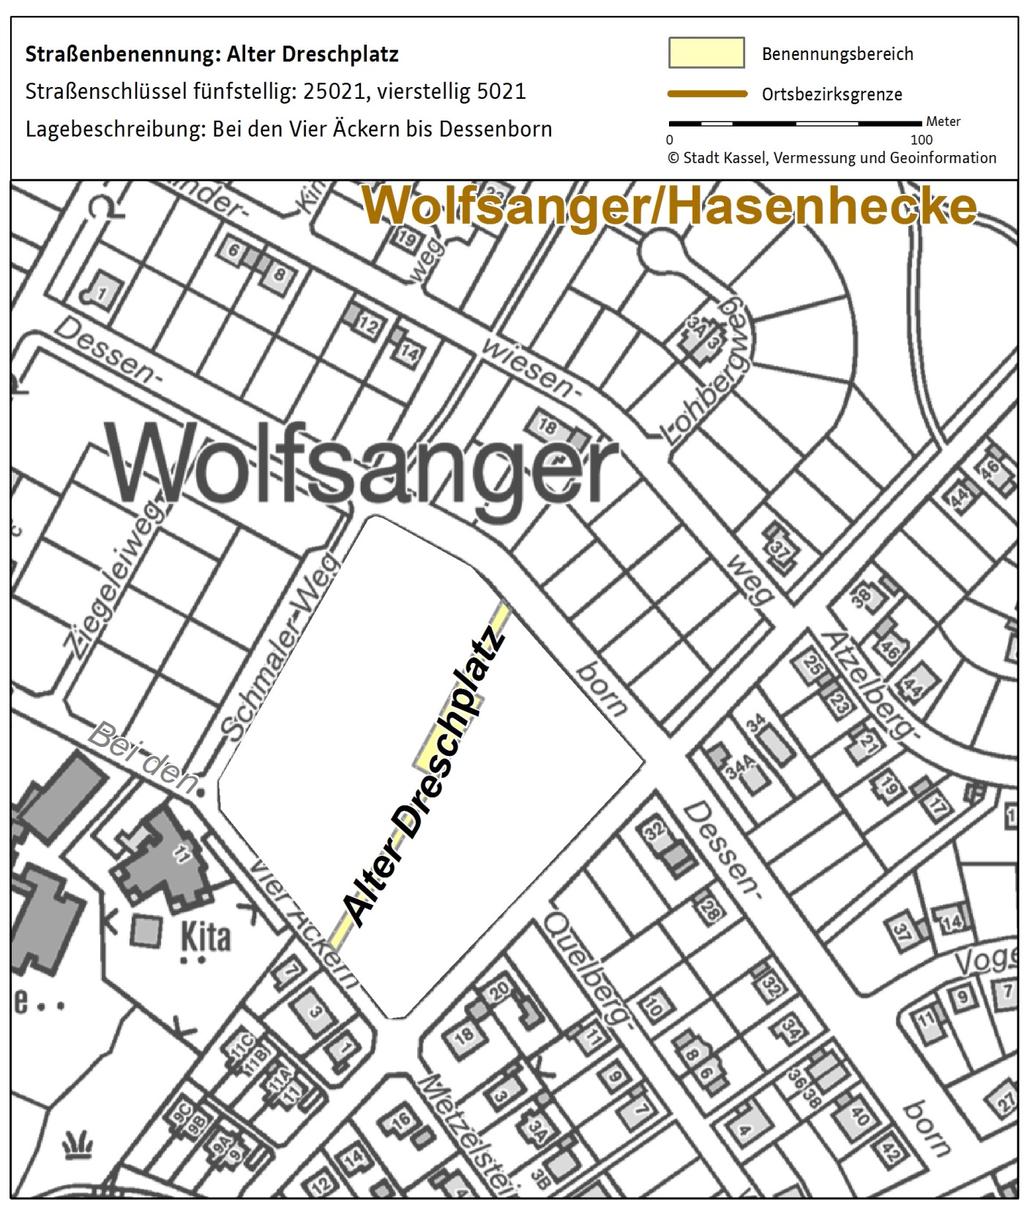 Straßenbenennungen in der Stadt Kassel Der Ortsbeirat Wolfsanger/Hasenhecke hat in seiner Sitzung vom 7. Dezember 2017 die Straßenbenennung Alter Dreschplatz beschlossen.